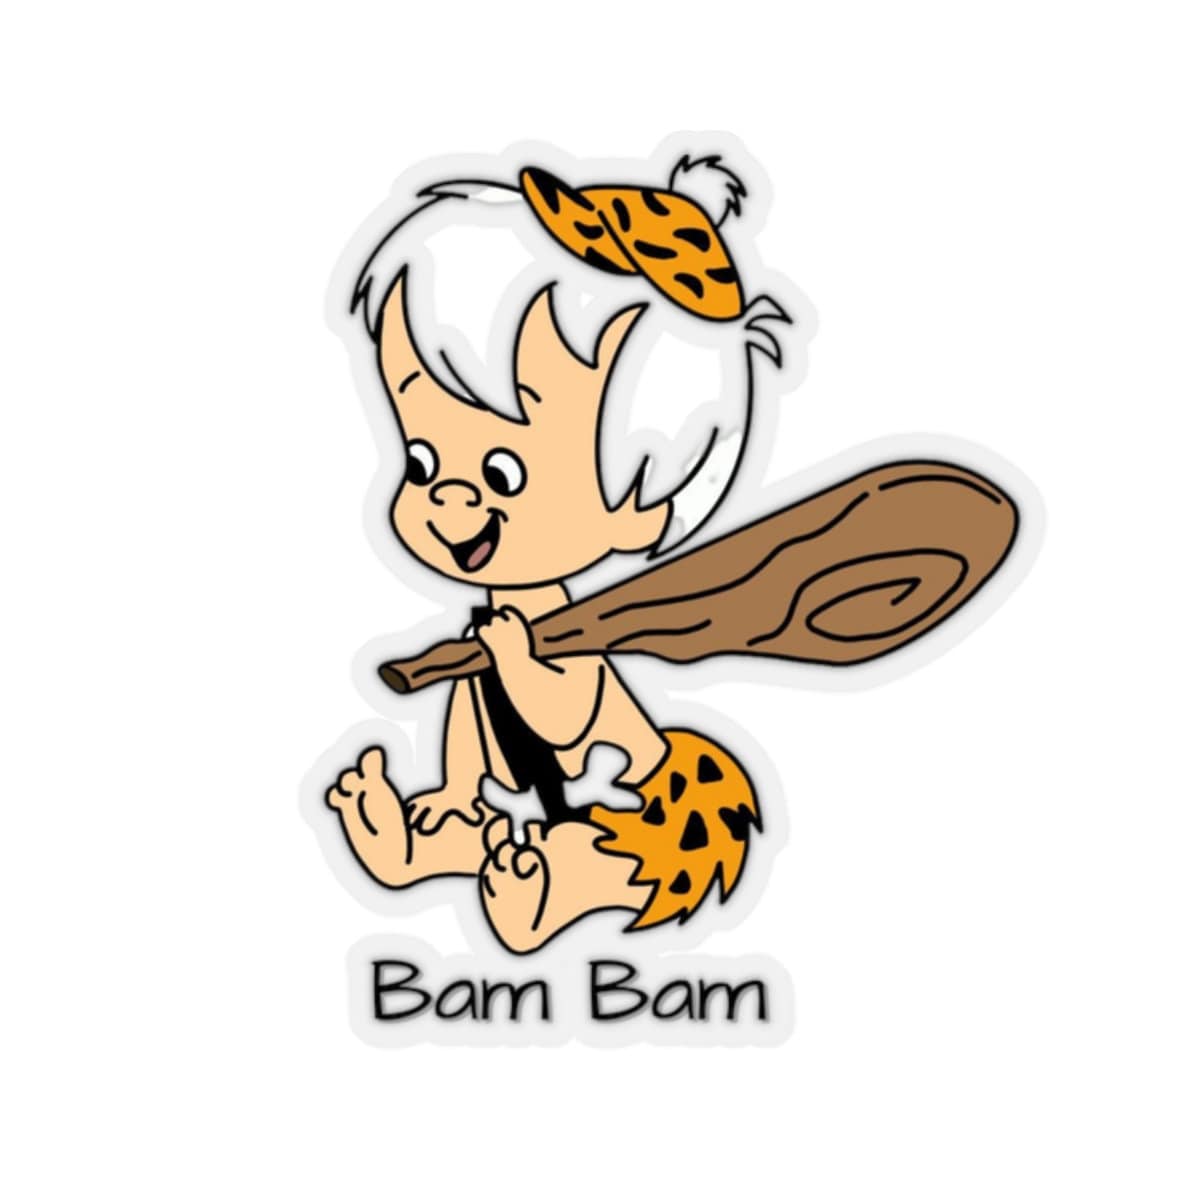 Cartoons Bam Bam - Etsy Australia